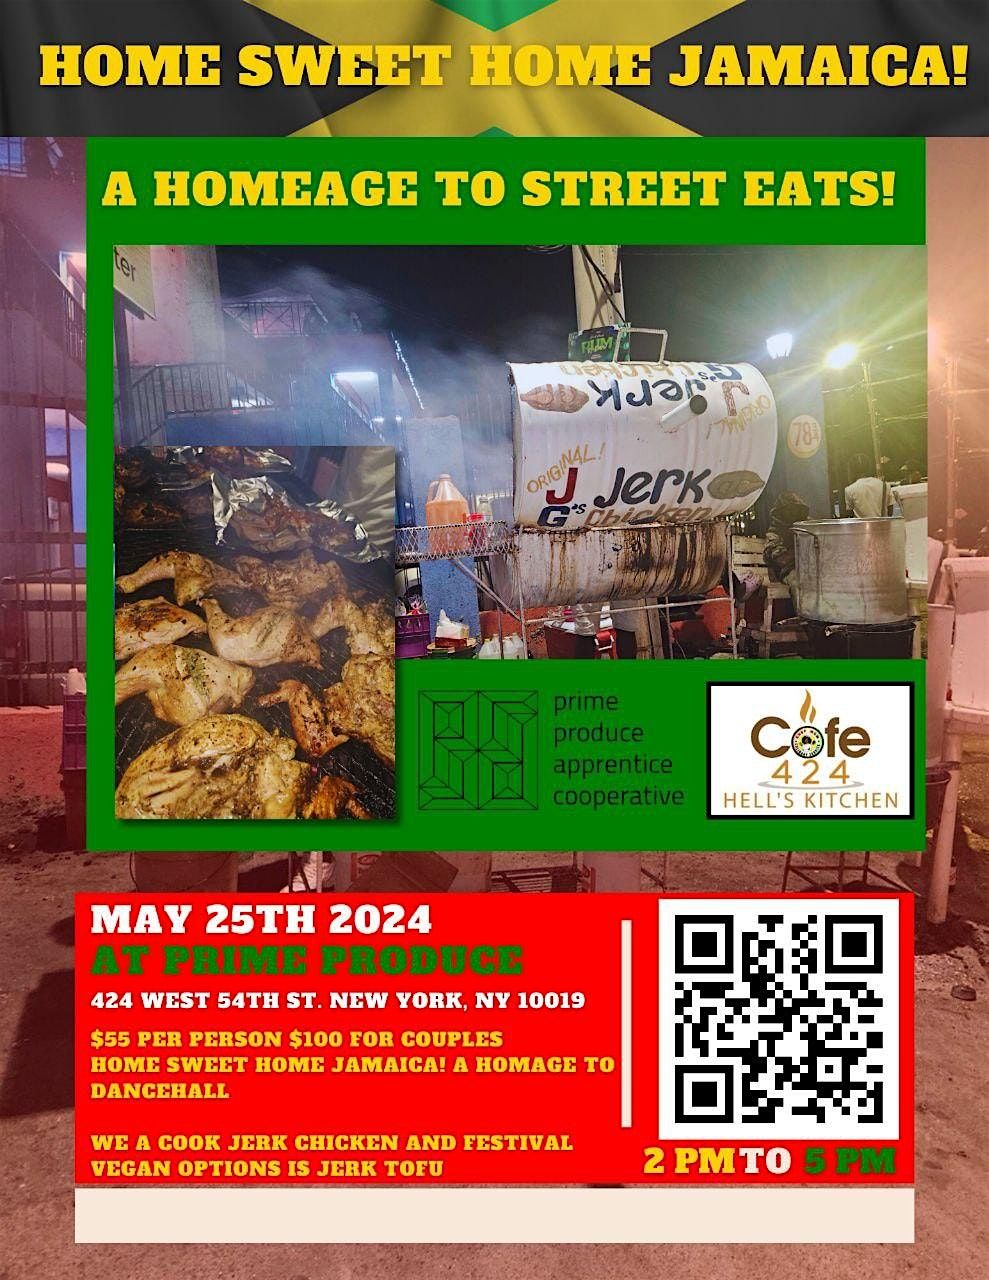 HOME SWEET HOME JAMAICA, HOMAGE TO STREET EATS - JERK RUB